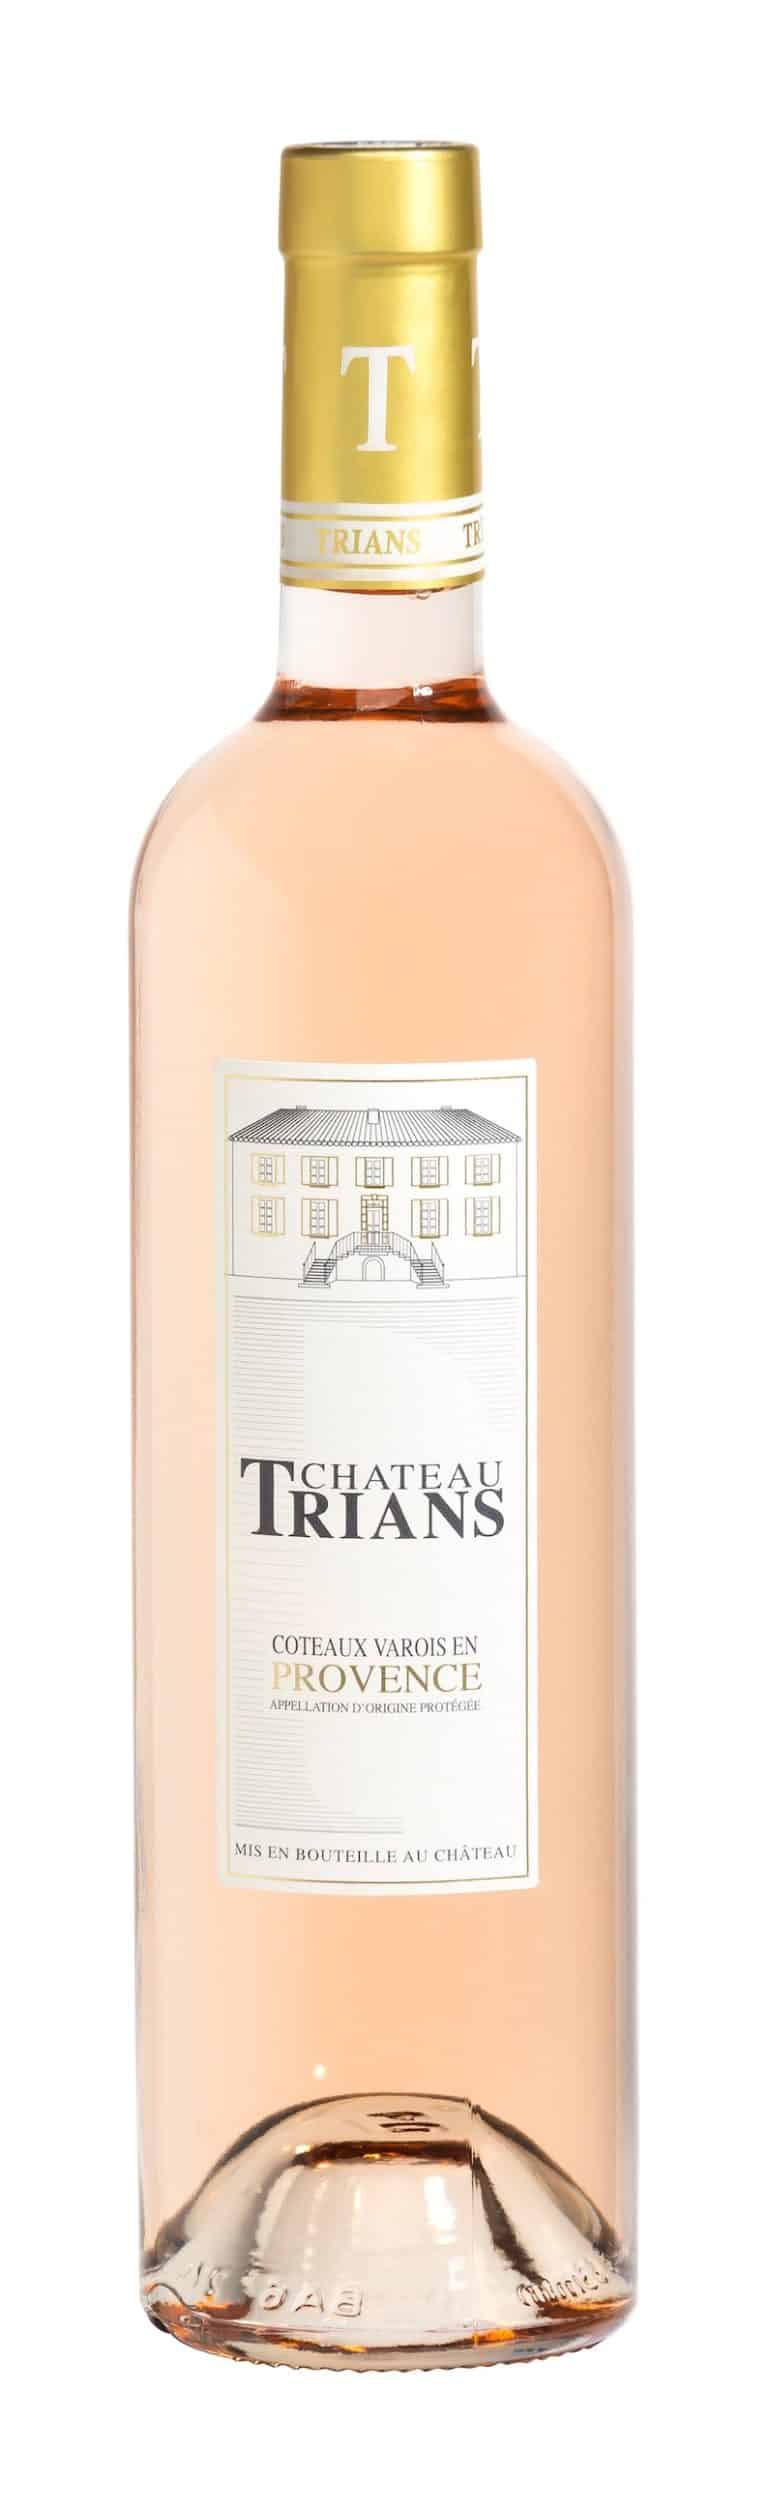 Le Domaine Trians propose deux vins rosés grandioses avec le Château Trians rosé 2020 et le Saint Clément rosé 2019.